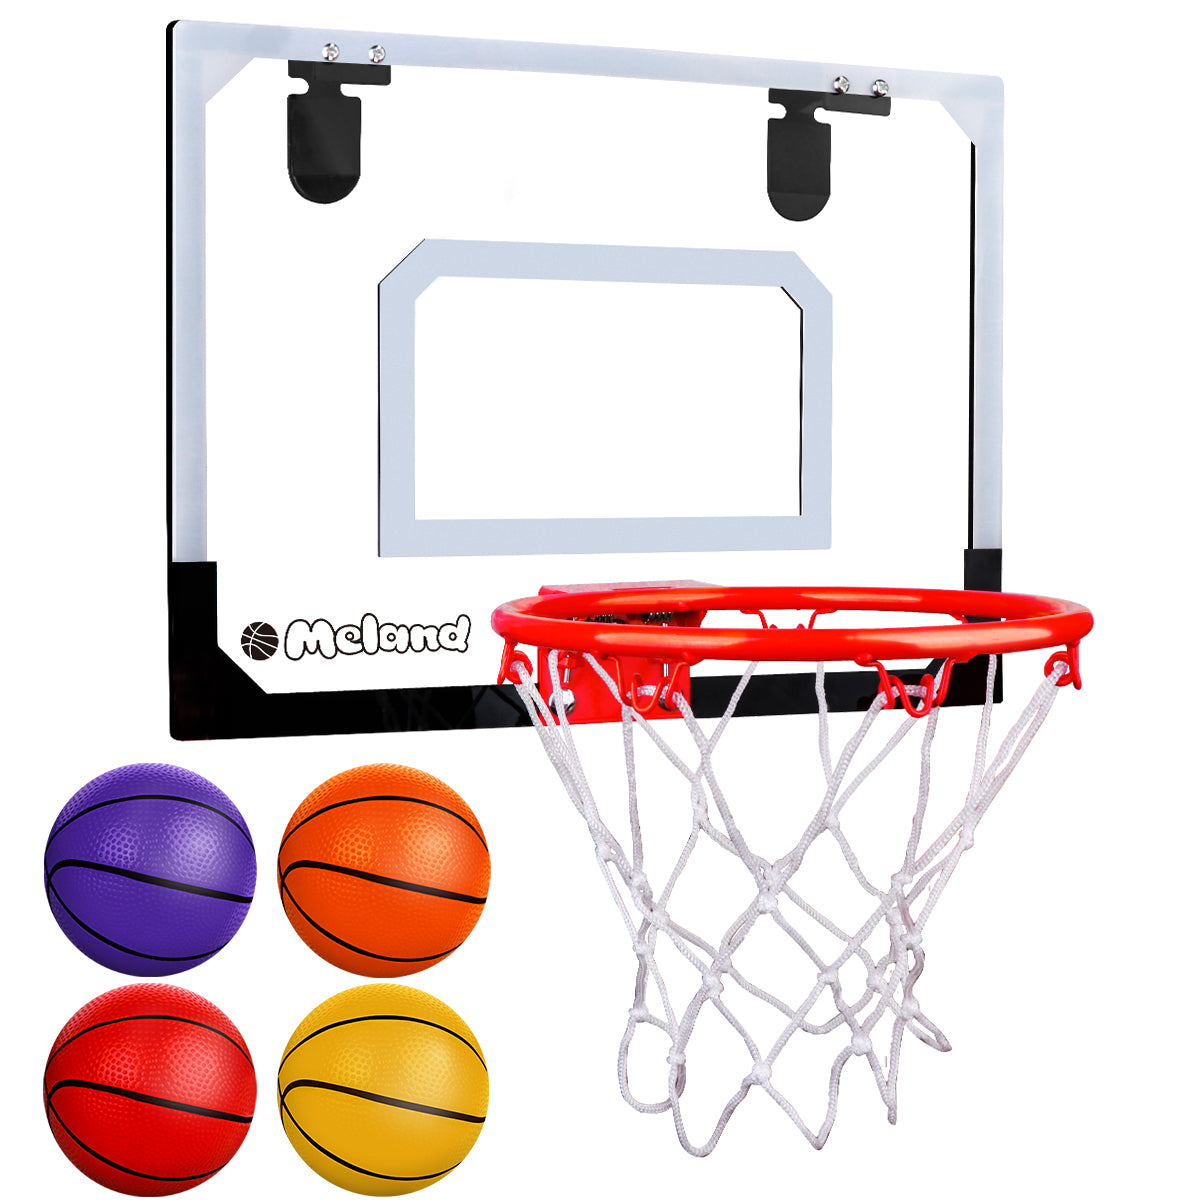 basketball ball and hoop